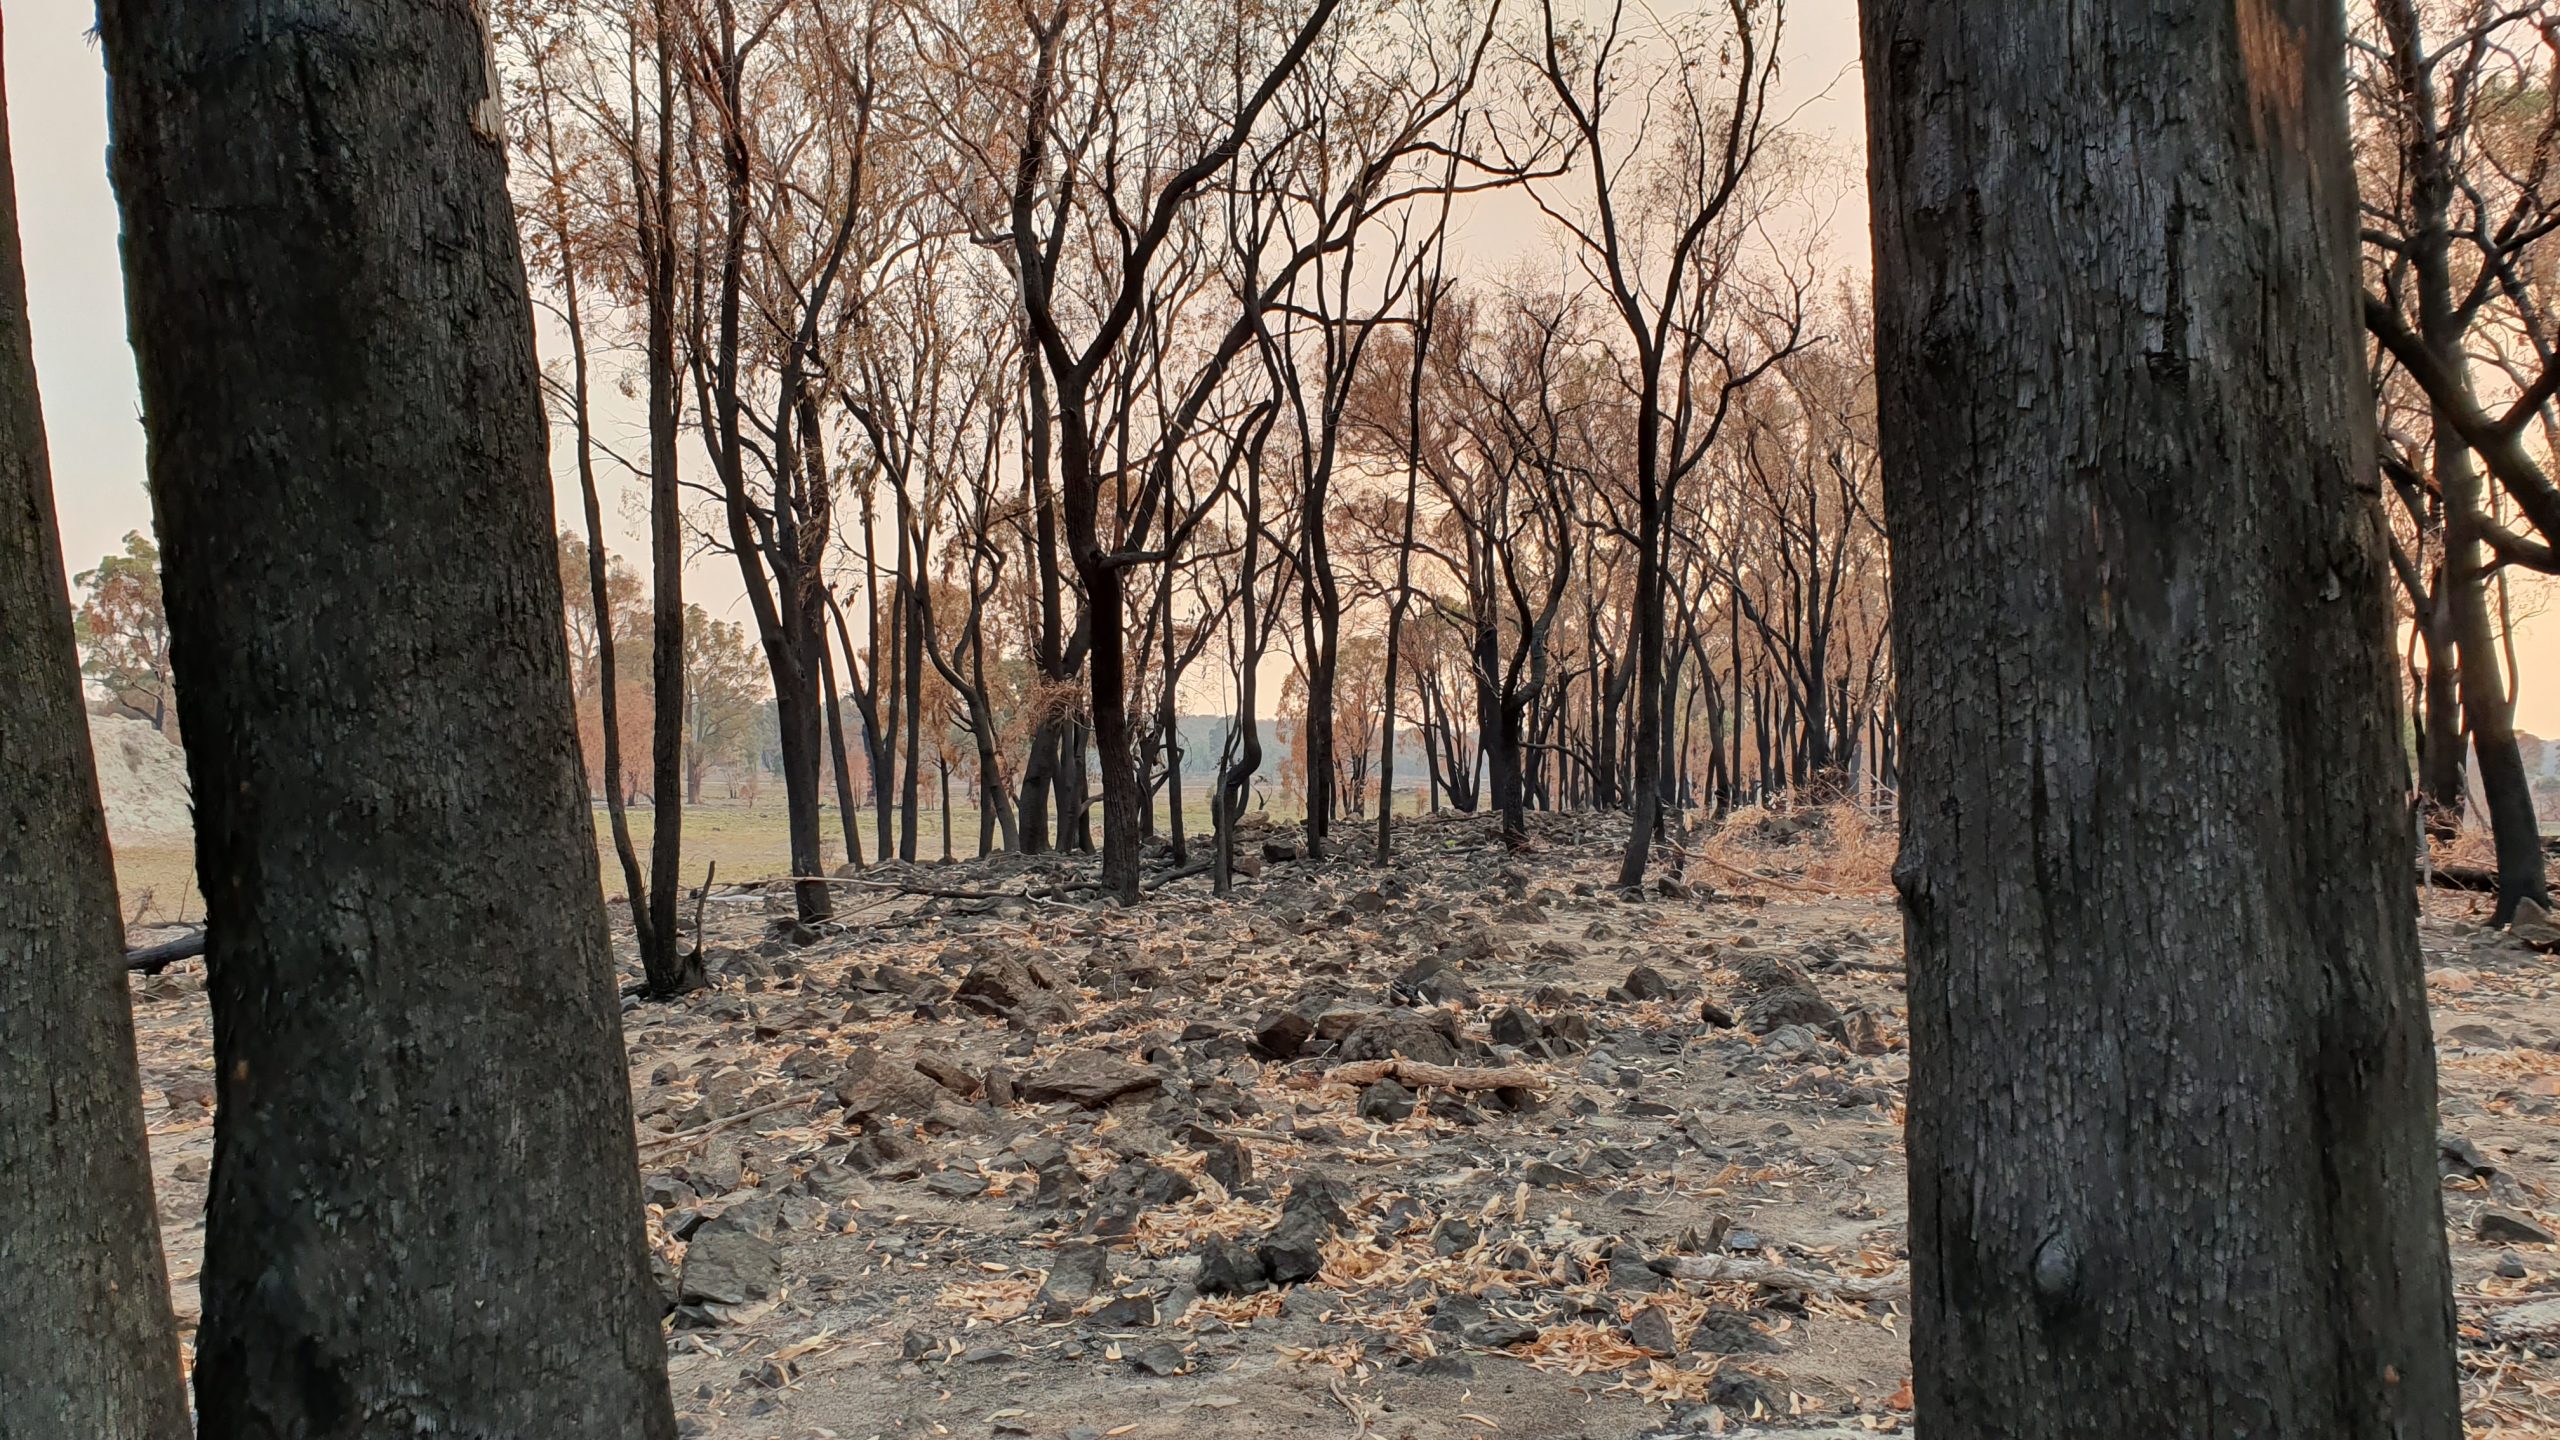 Burnt trees